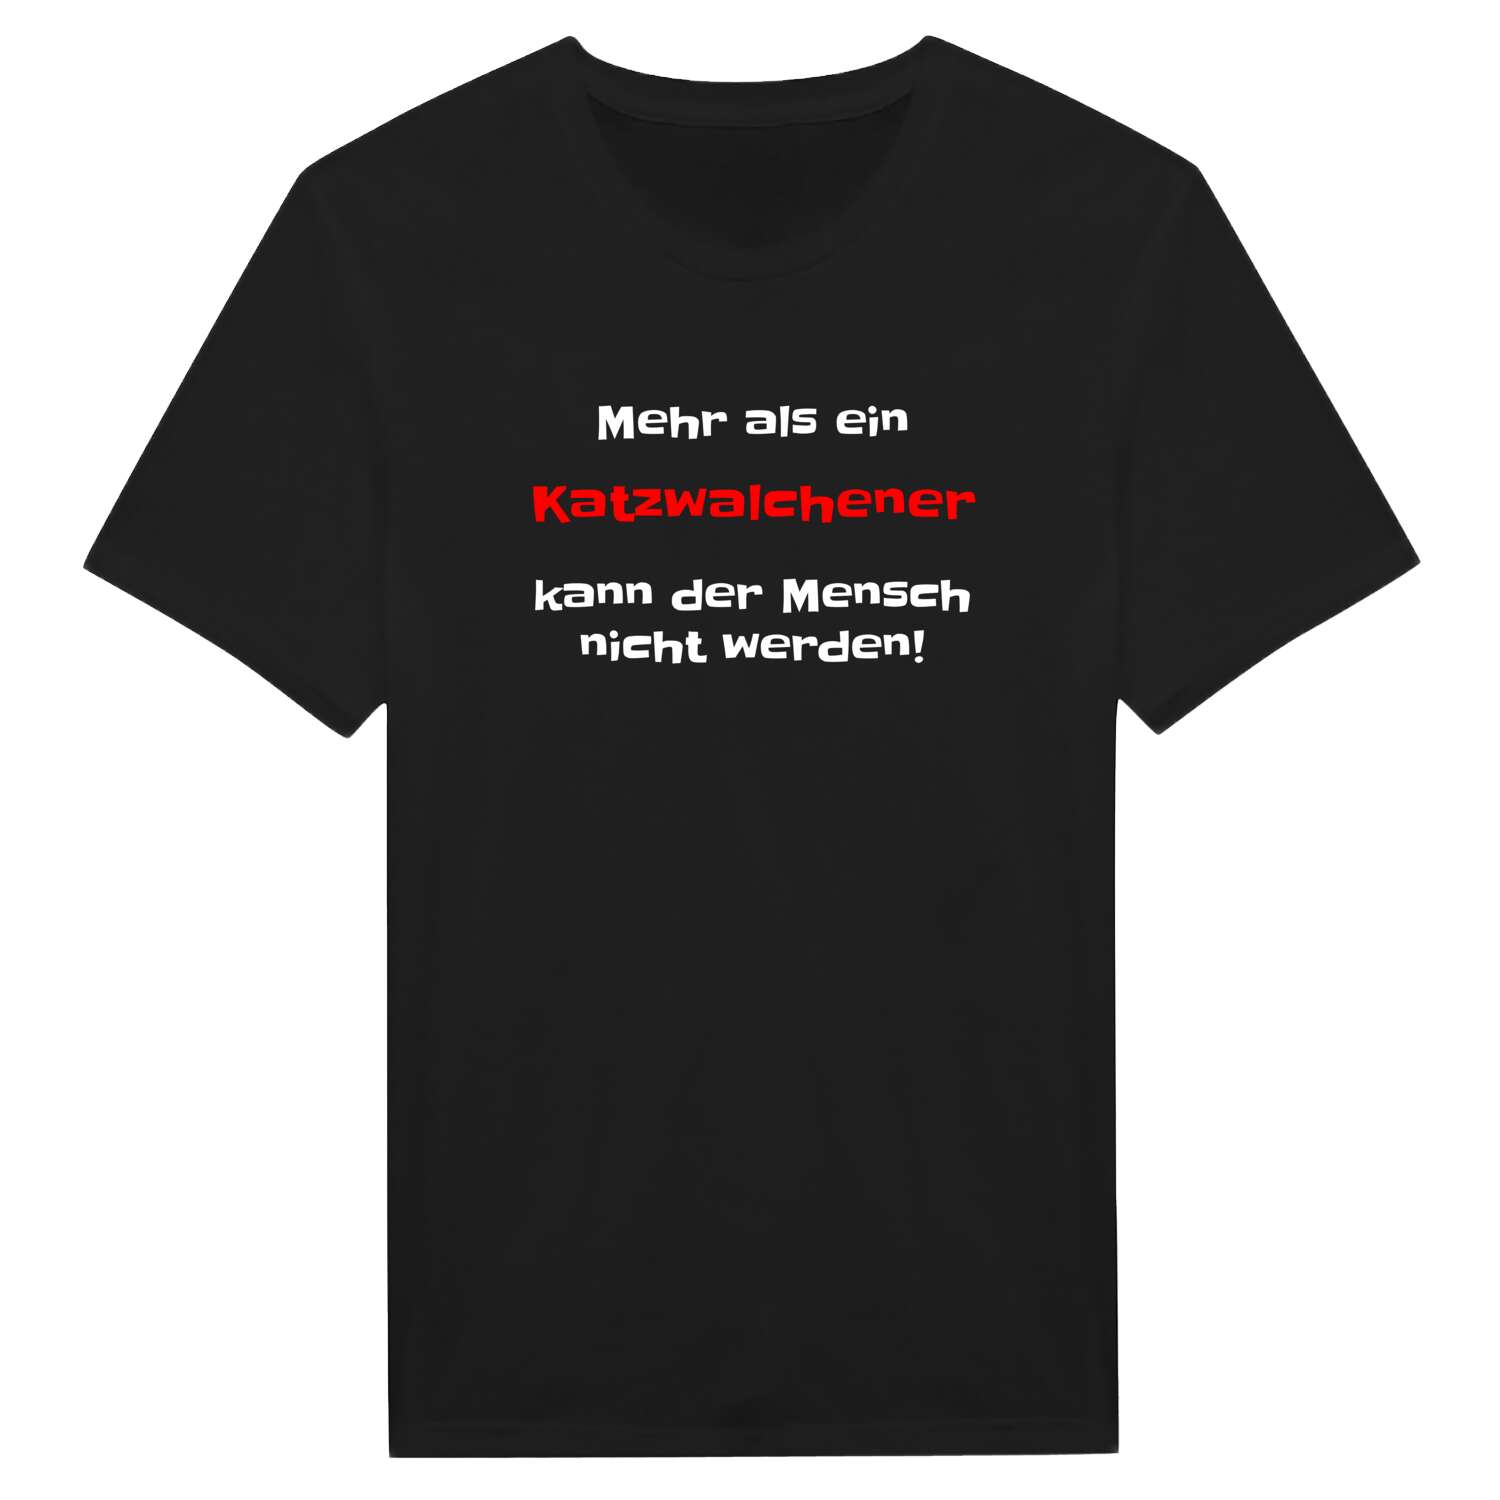 Katzwalchen T-Shirt »Mehr als ein«